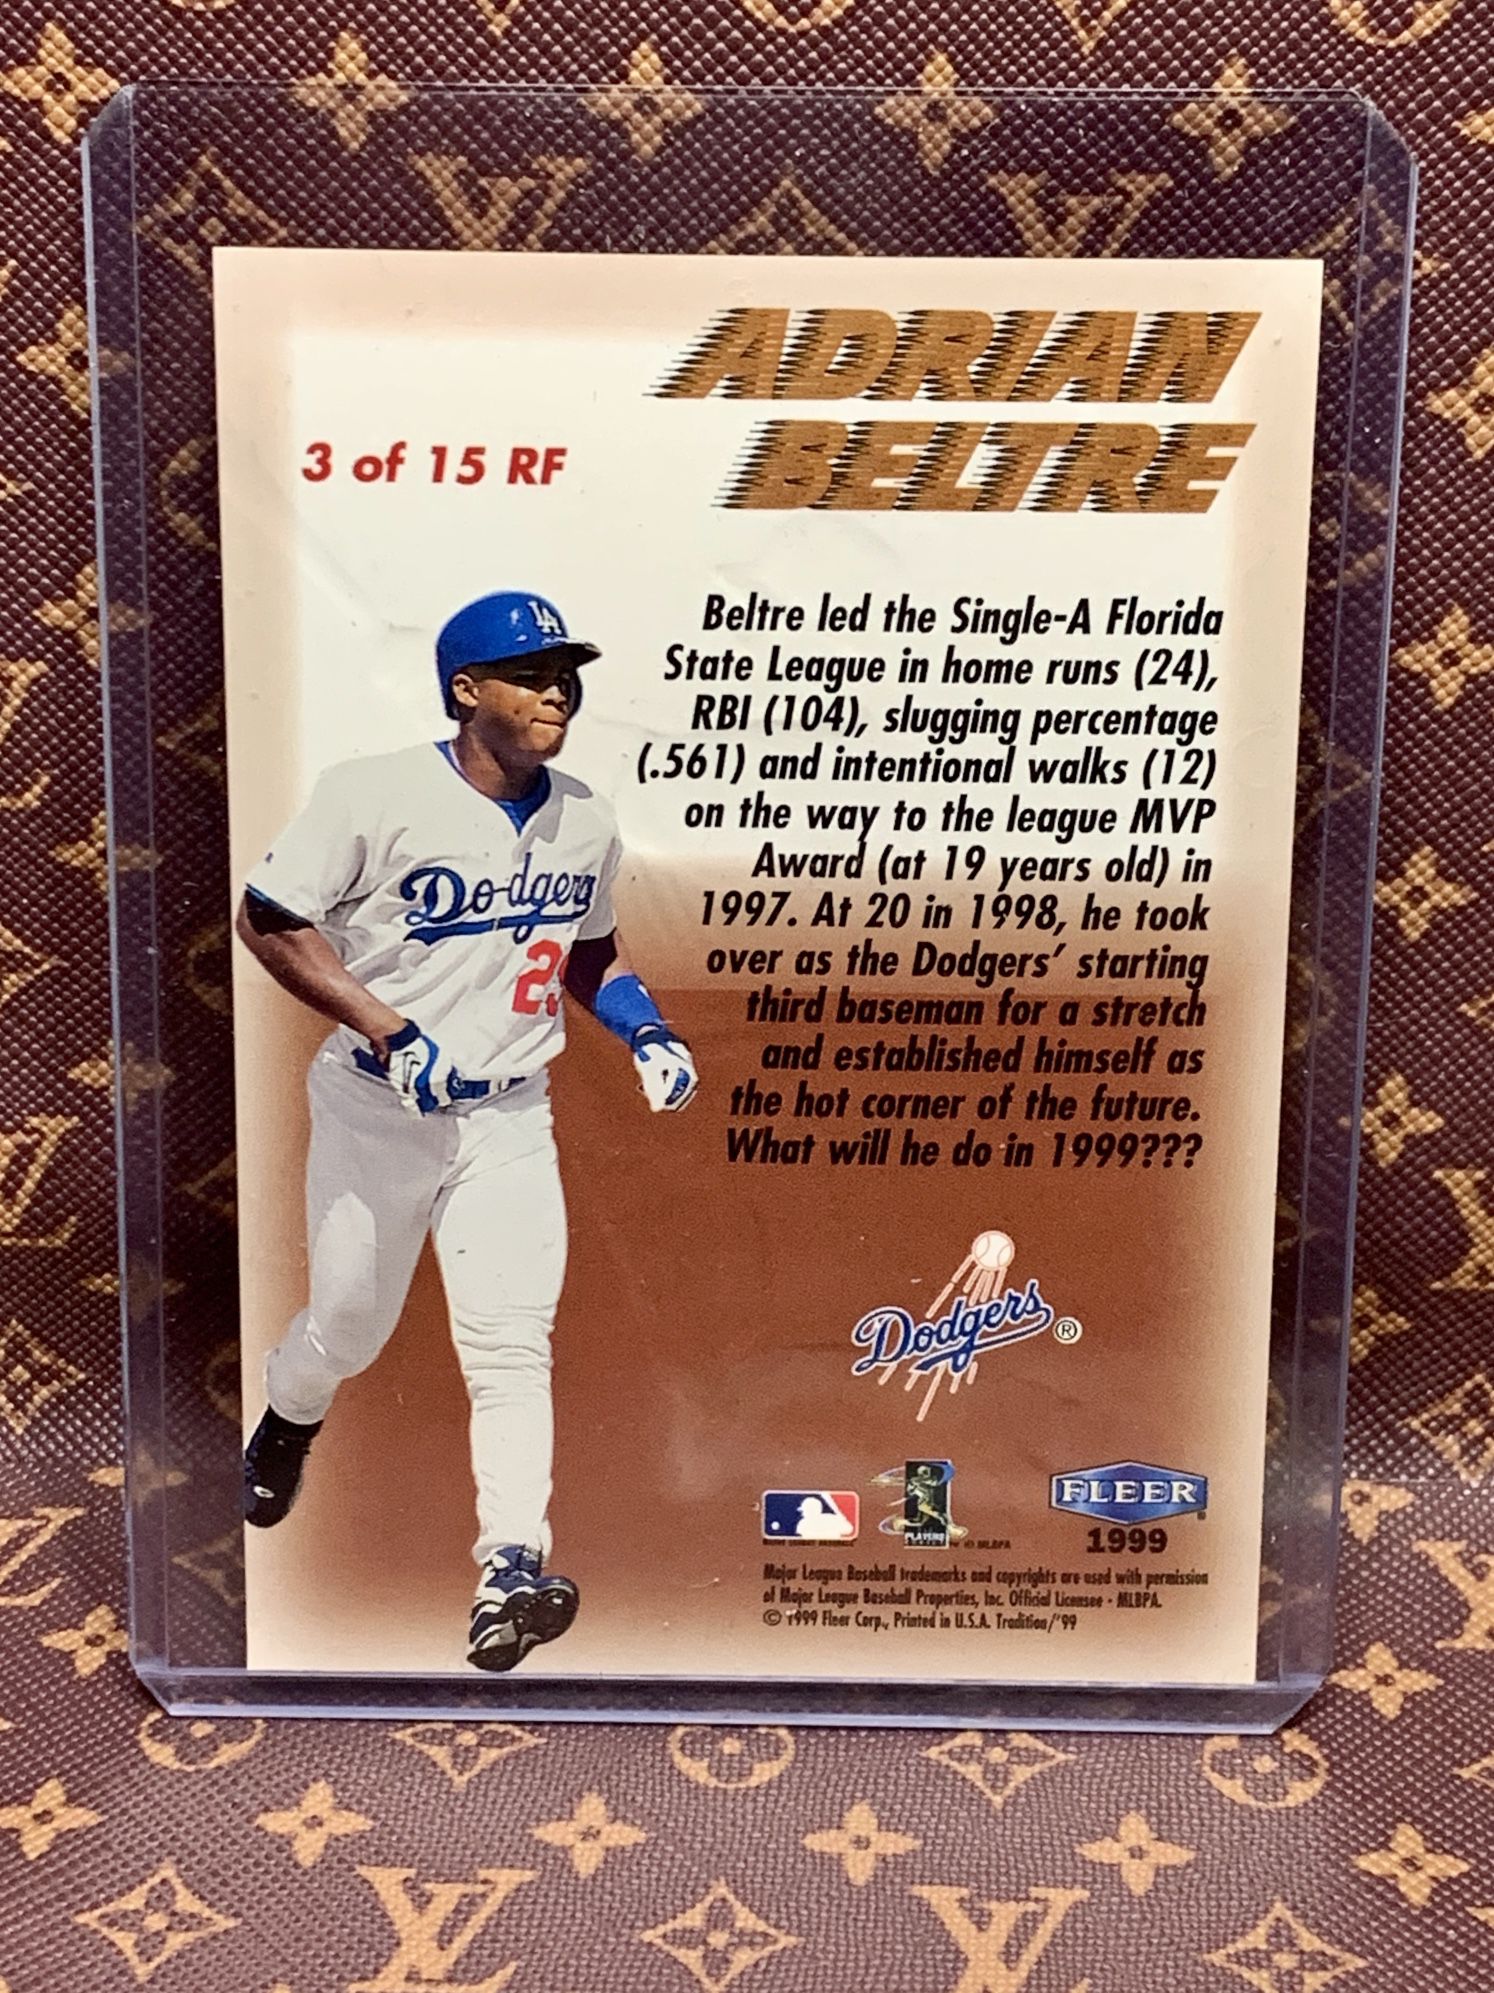 Dodgers Adrian Beltre fun club 2002 for Sale in Lomita, CA - OfferUp